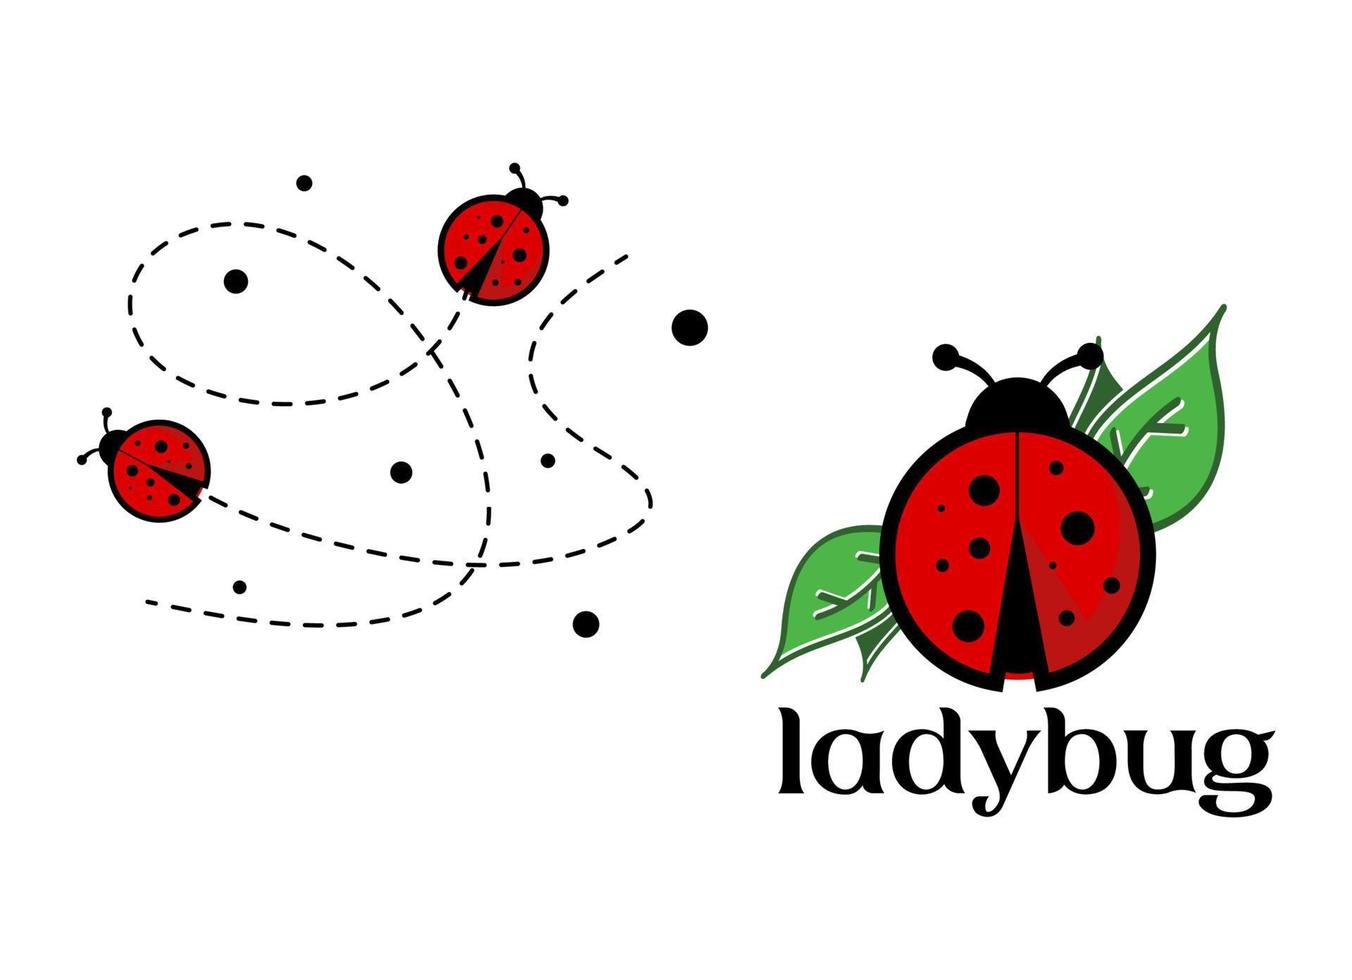 Ladybug logo on white background vector